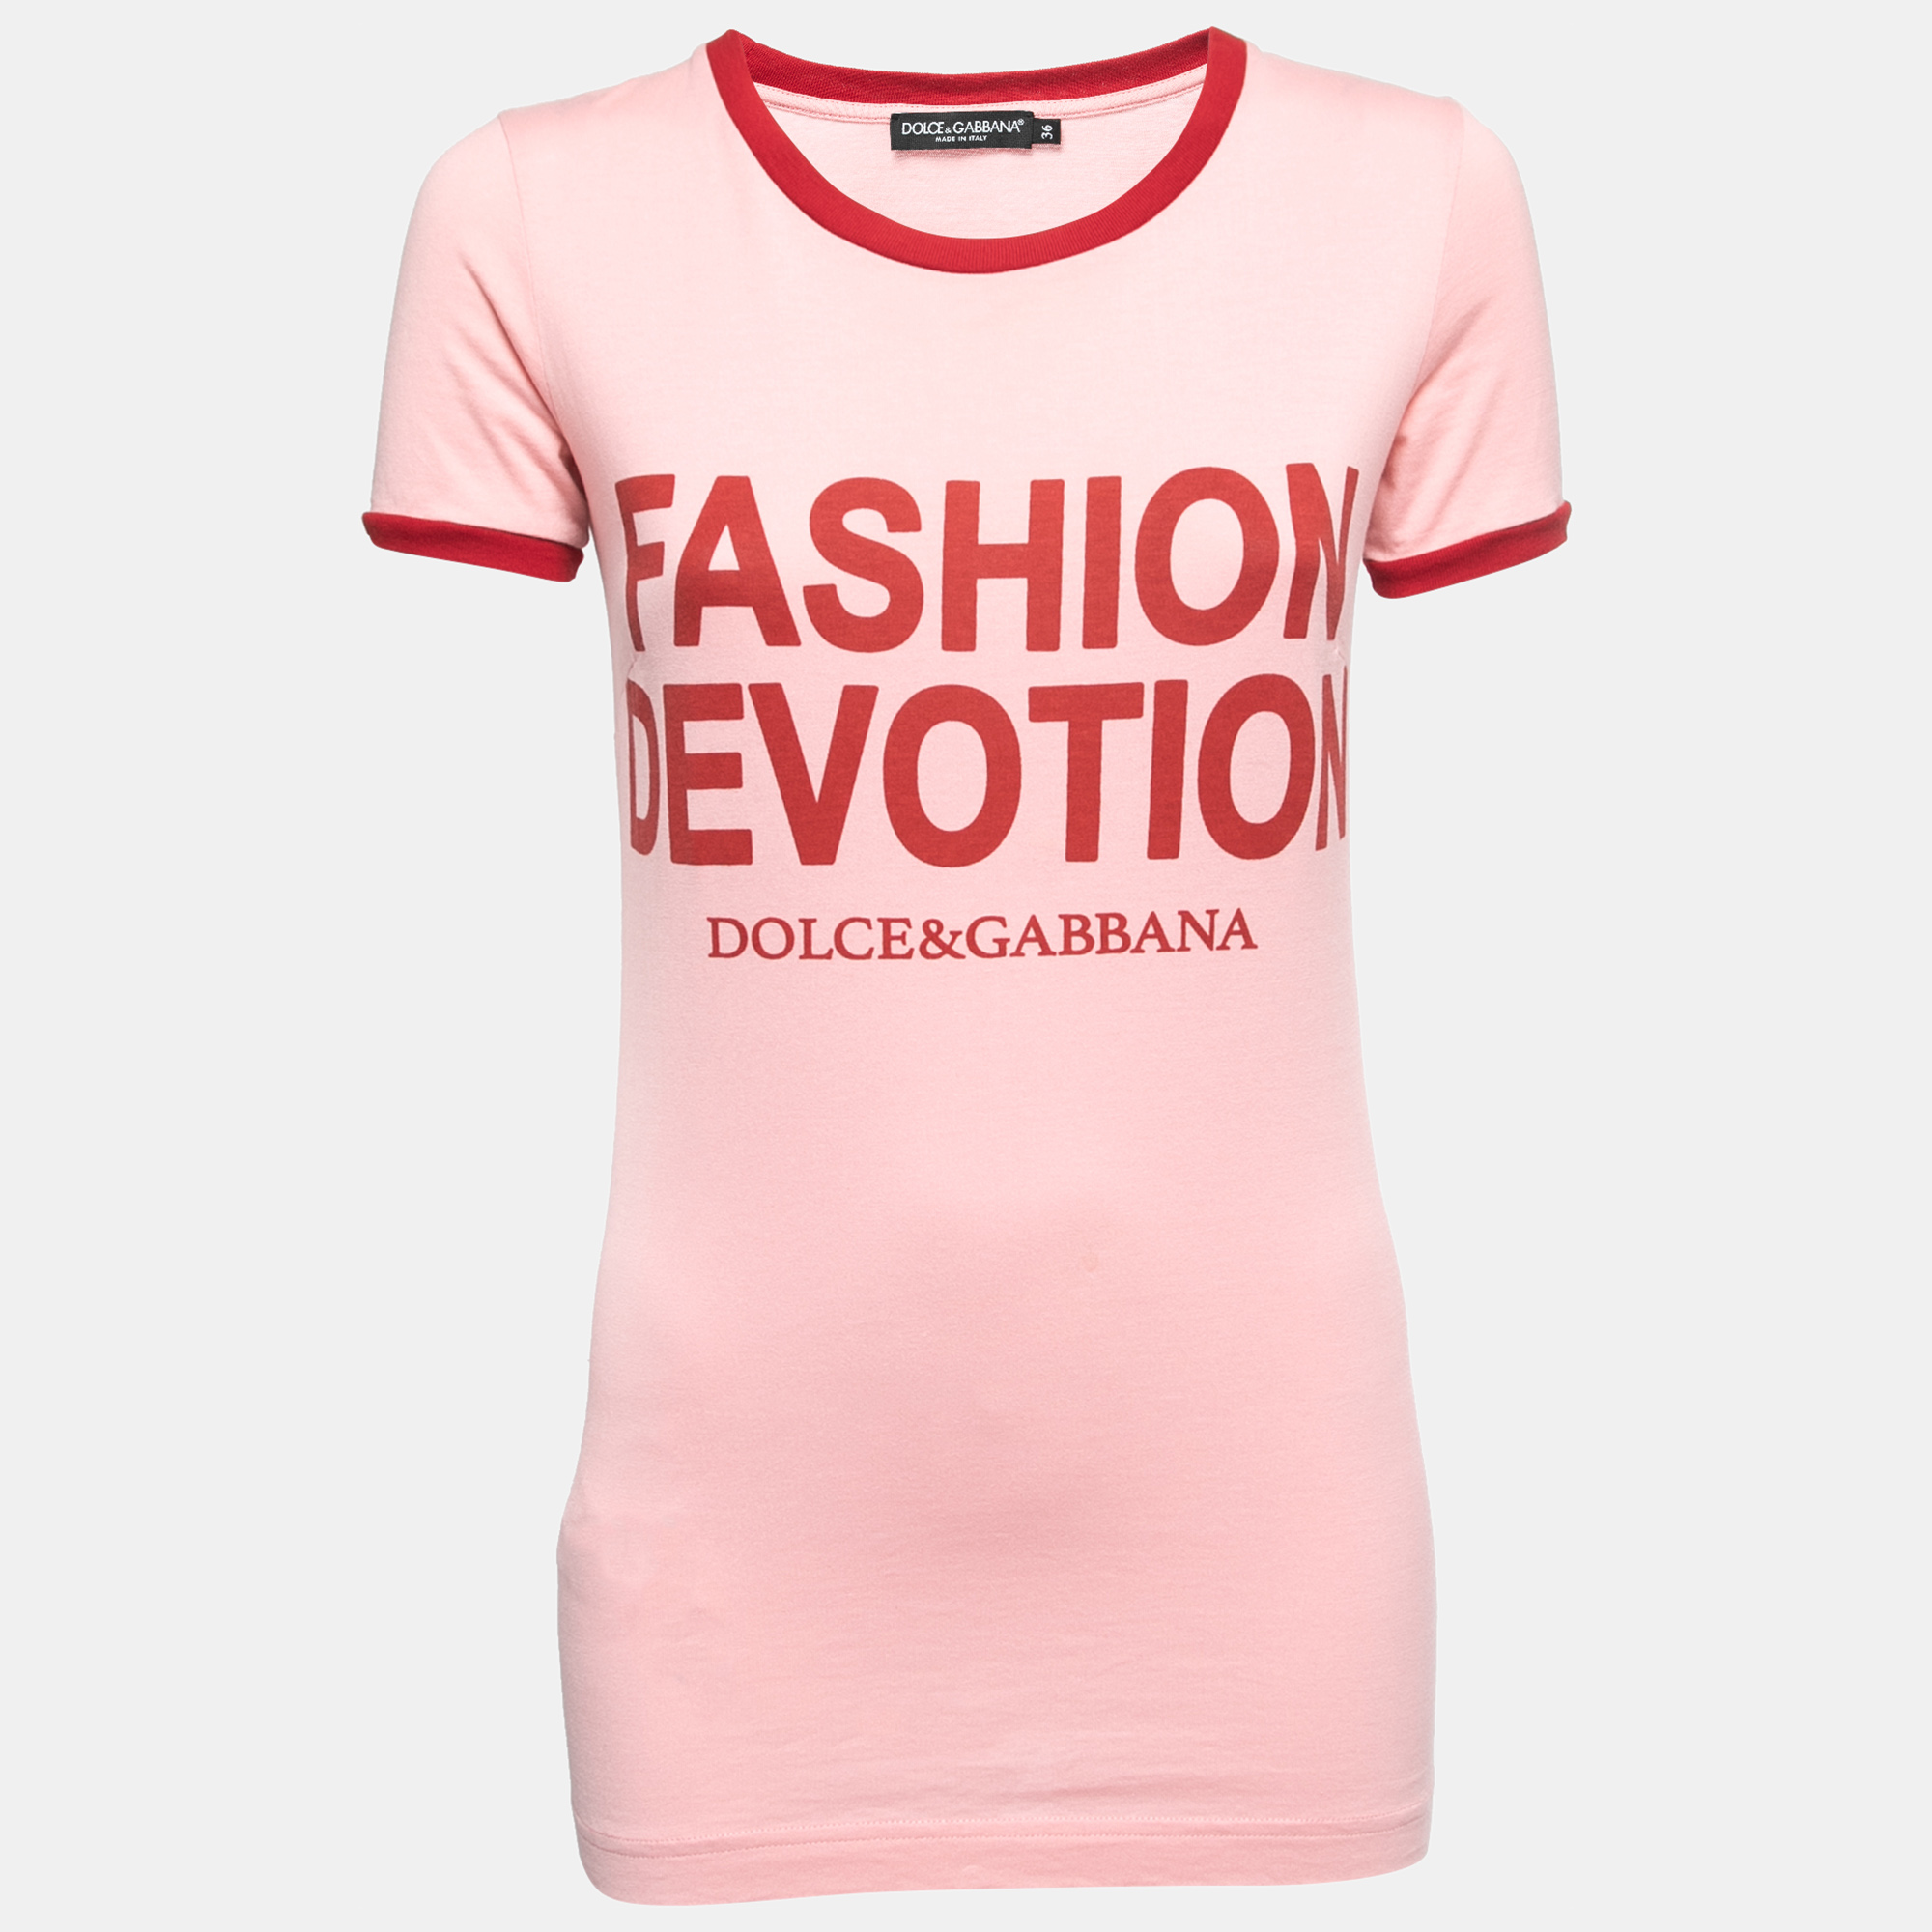 

Dolce & Gabbana Pink Fashion Devotion Print Cotton Crew Neck T-Shirt